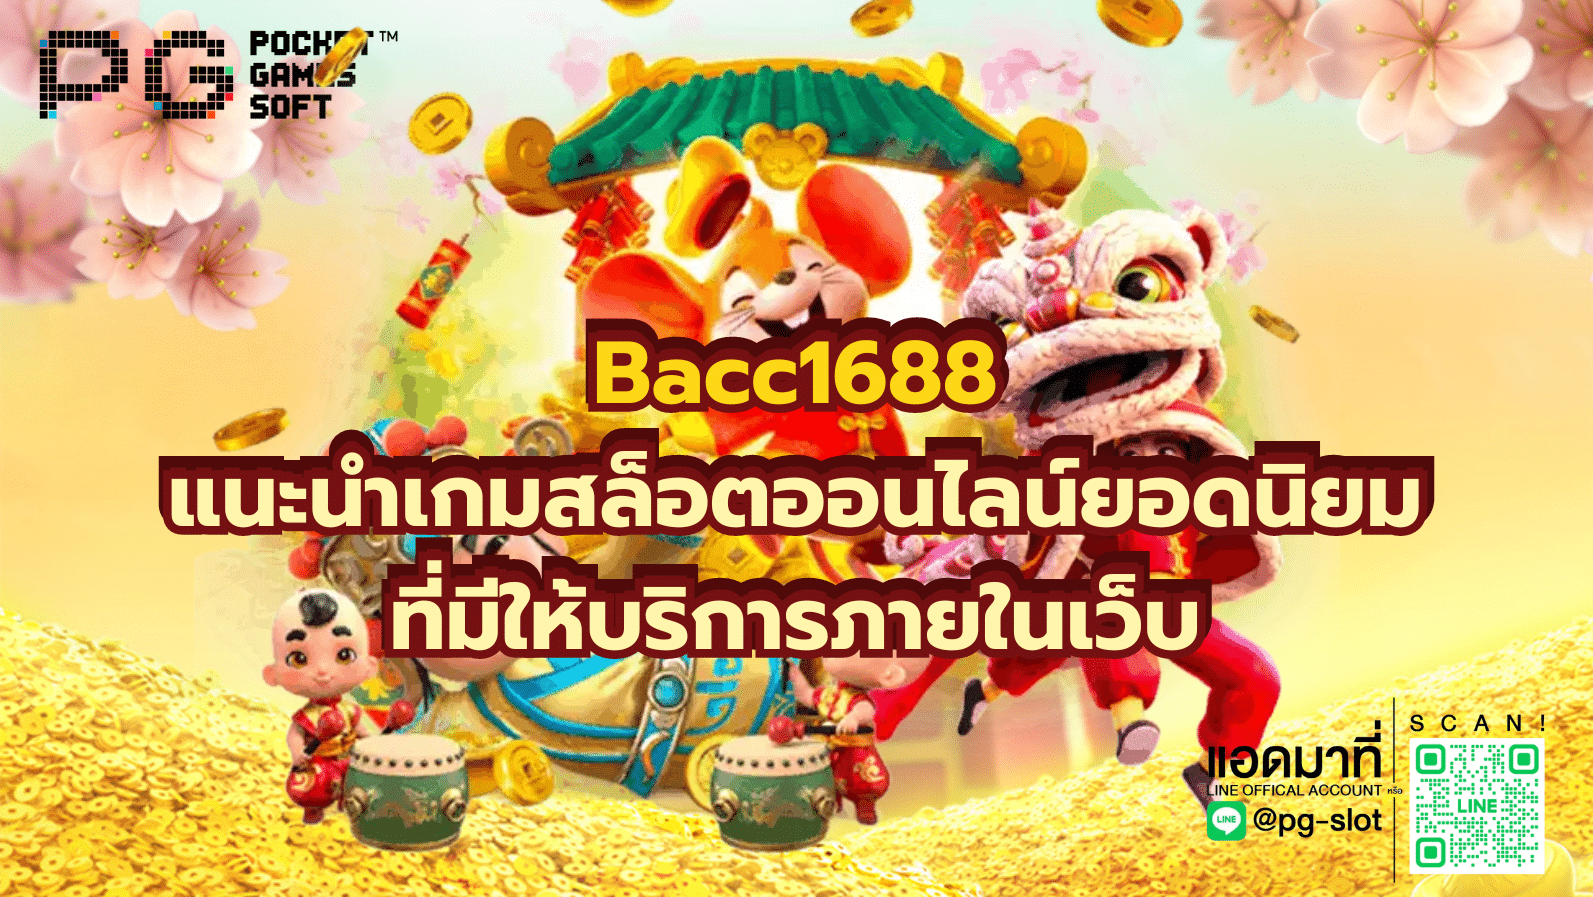 Bacc1688